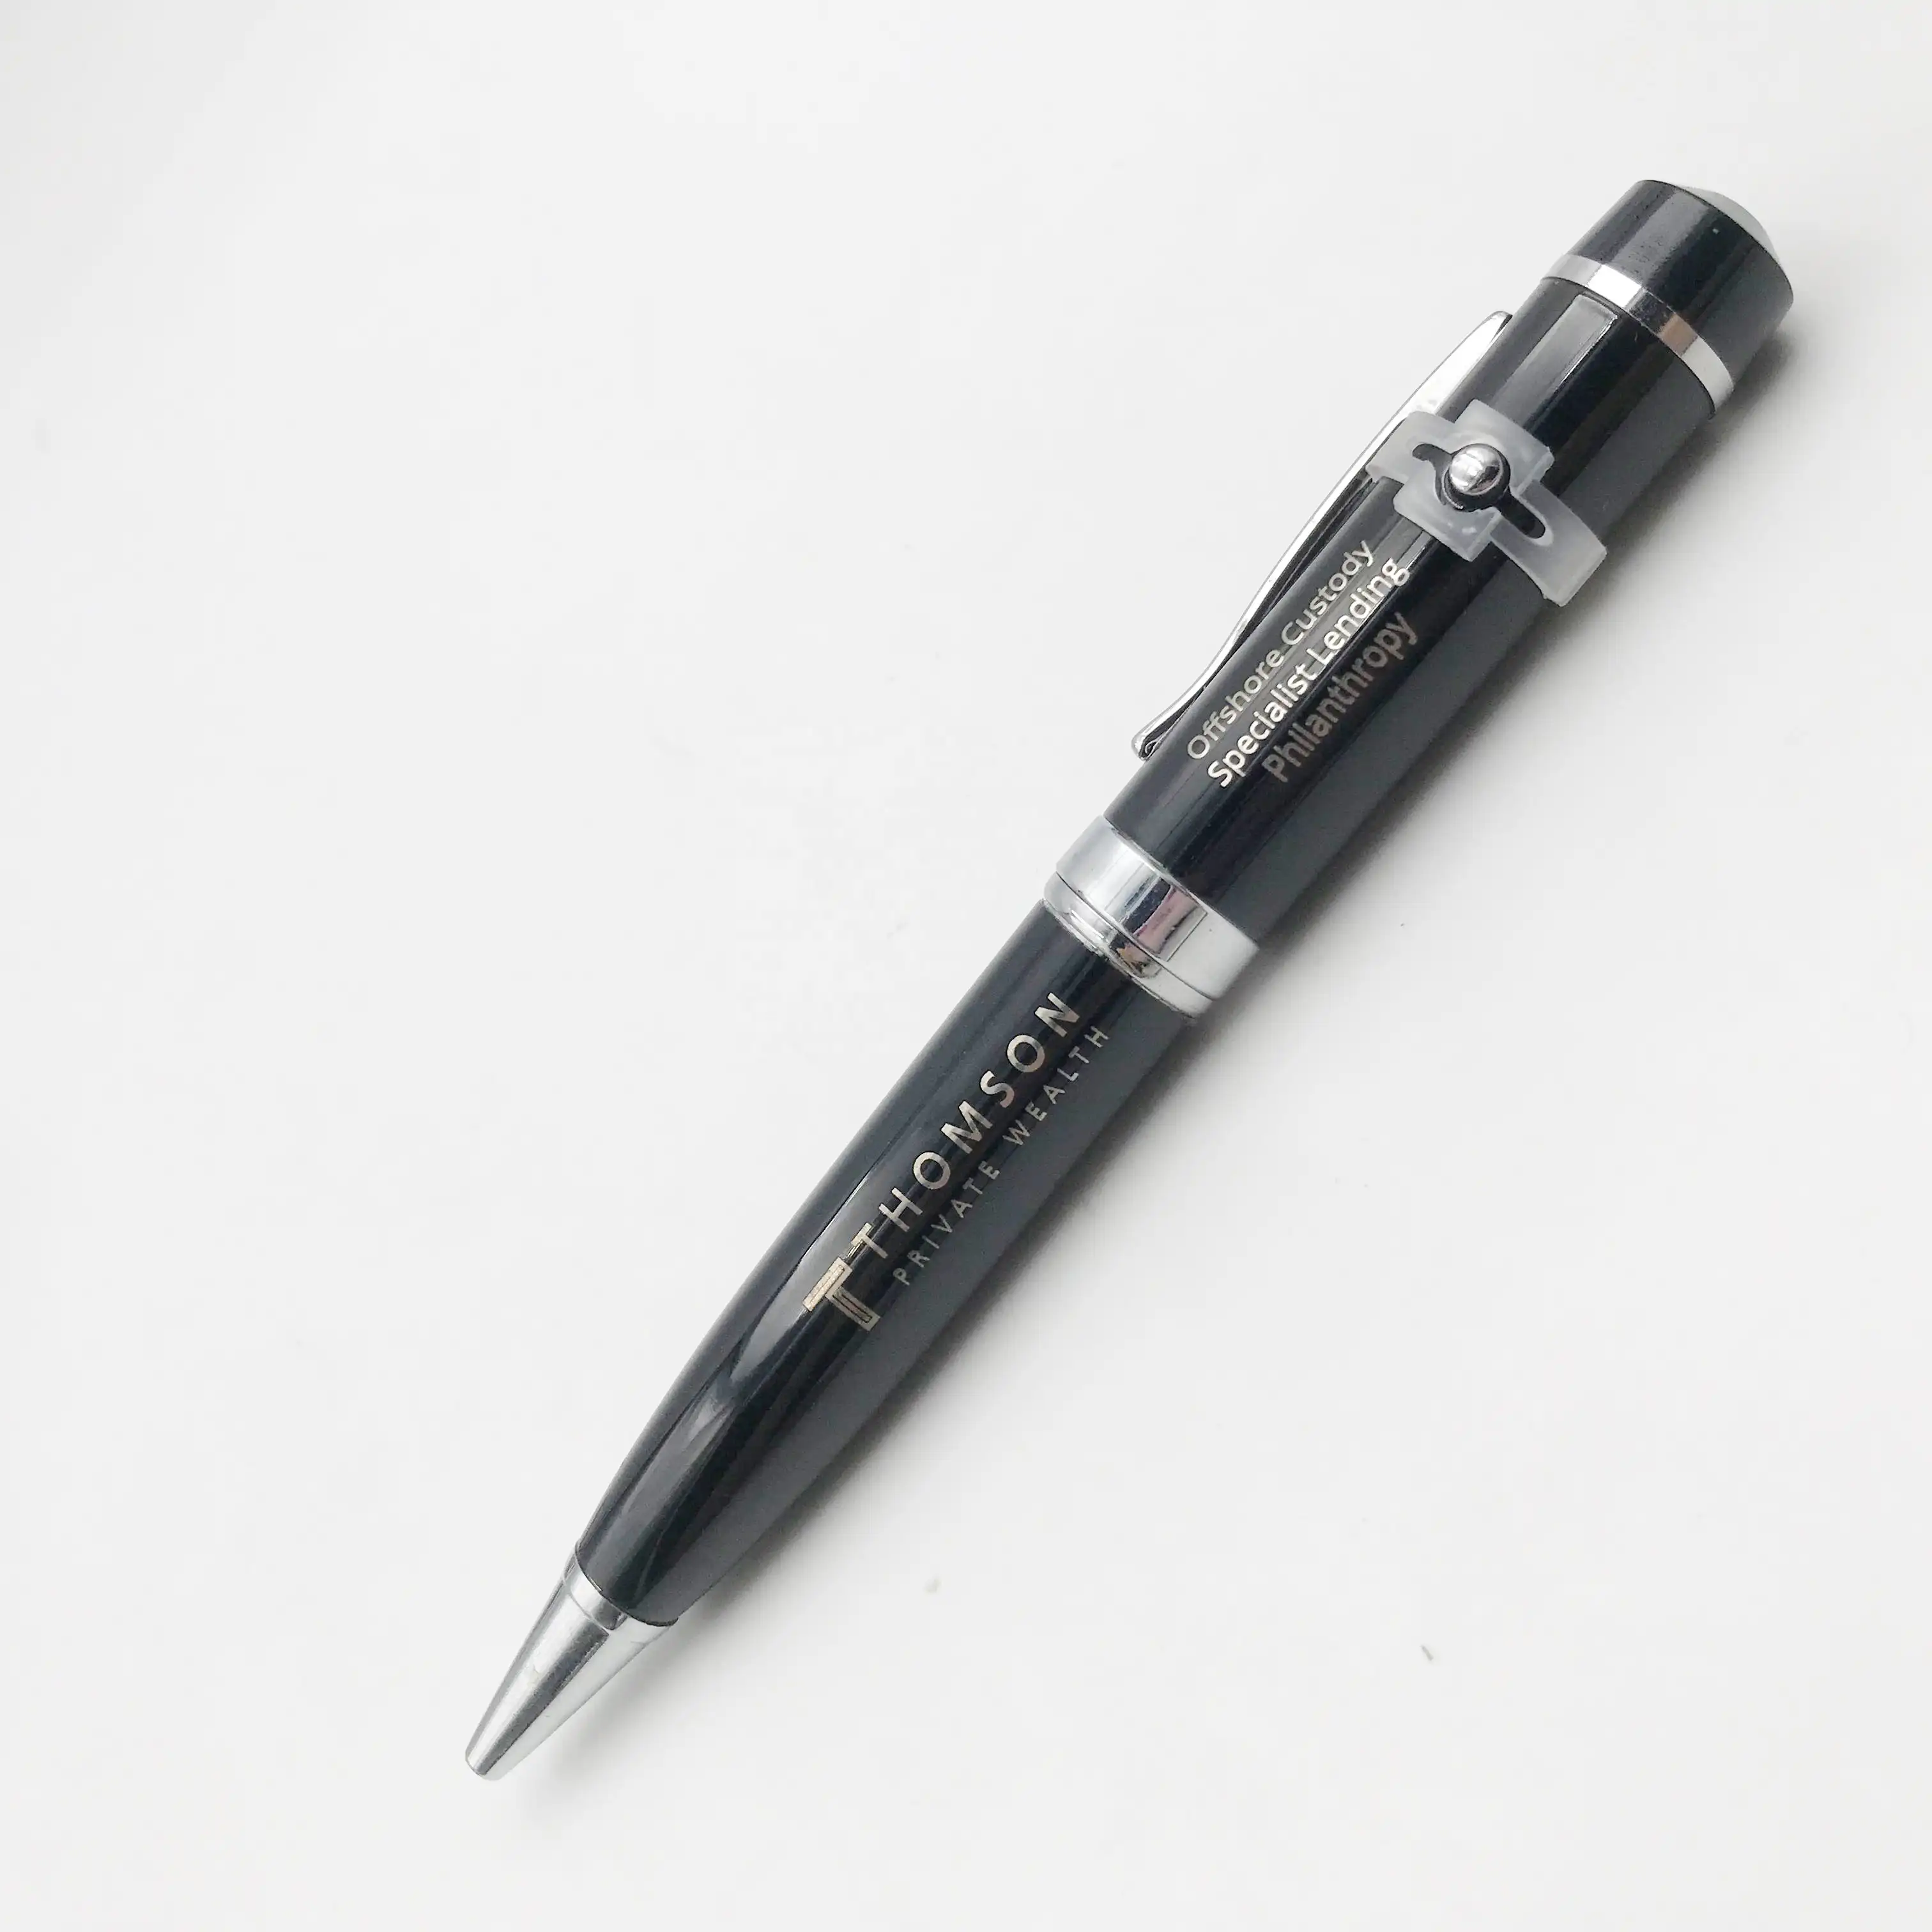 चीन में किए गए लेजर बिंदु कलम के लिए प्रशिक्षण काले चांदी के रंग में 3 एक कलम यूएसबी फ्लैश ड्राइव पेन ड्राइव 8gb 16gb